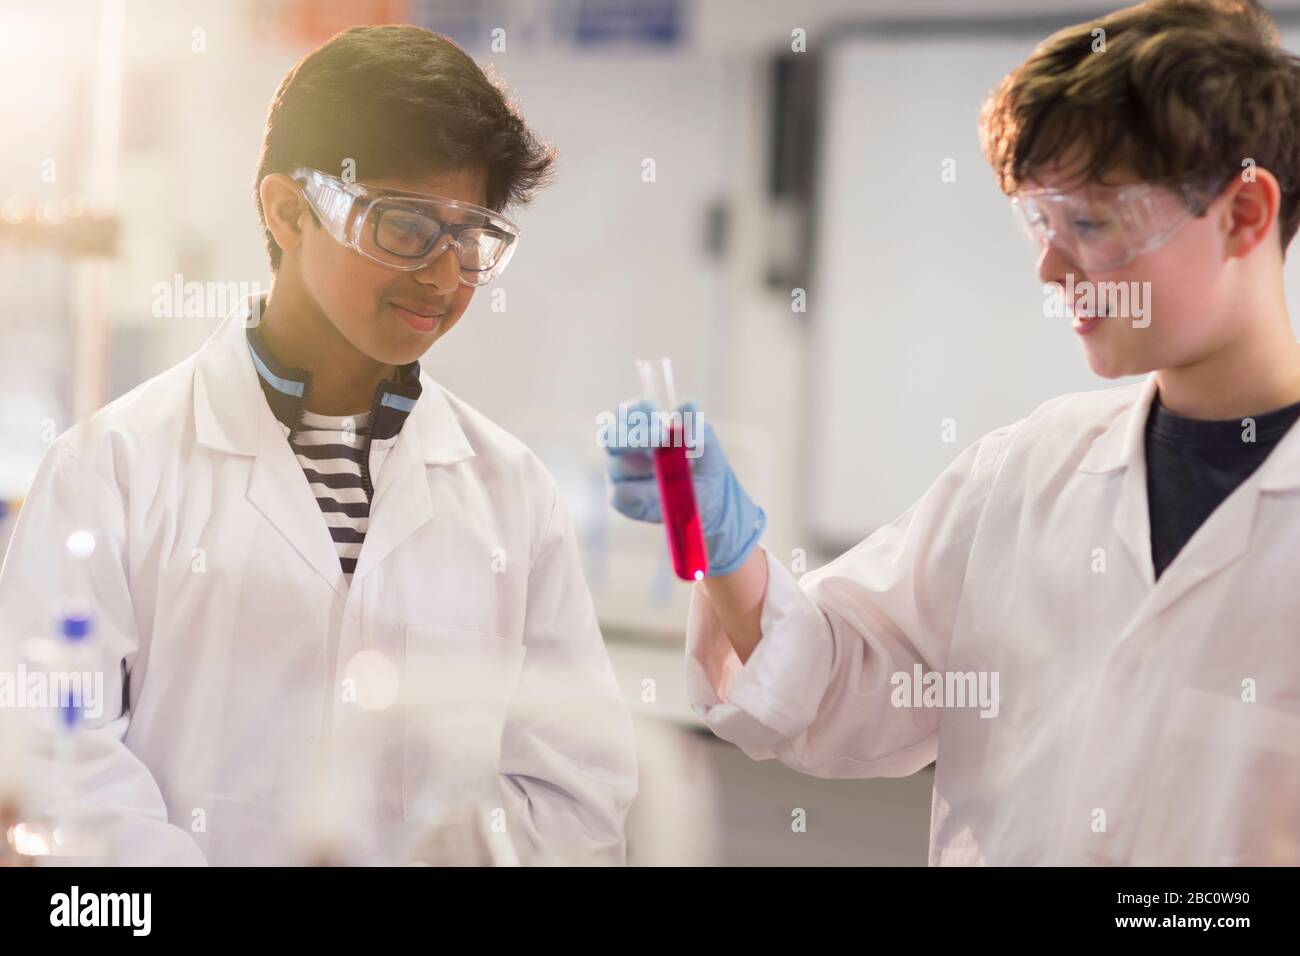 Élèves garçons examinant le liquide dans le tube à essai, menant des expériences scientifiques en salle de classe de laboratoire Banque D'Images